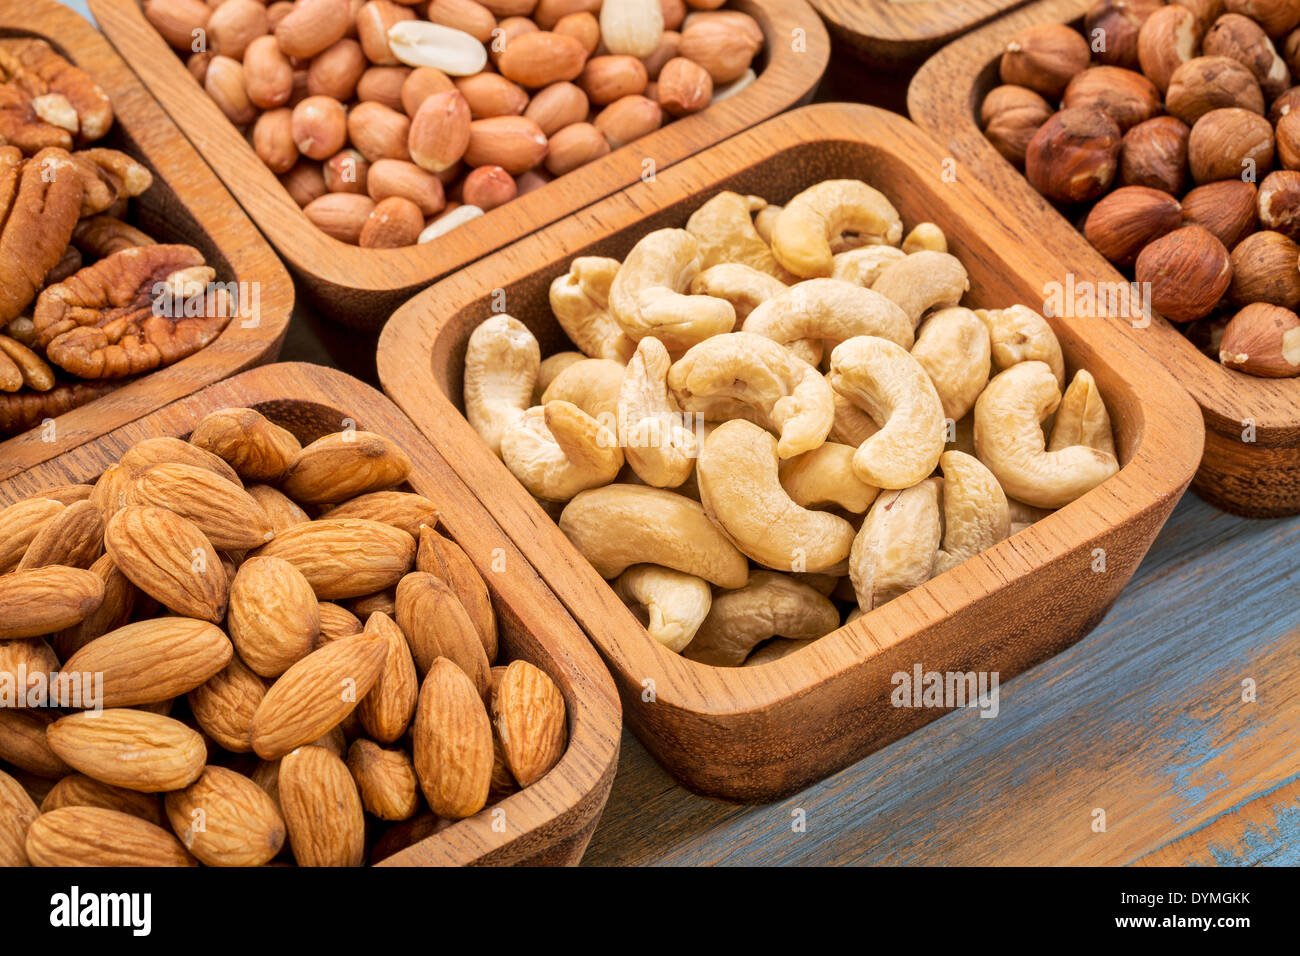 Muttern abstrakt - Pekannuss, Haselnuss, Cashew, spanische Erdnuss in Holzschalen Stockfoto